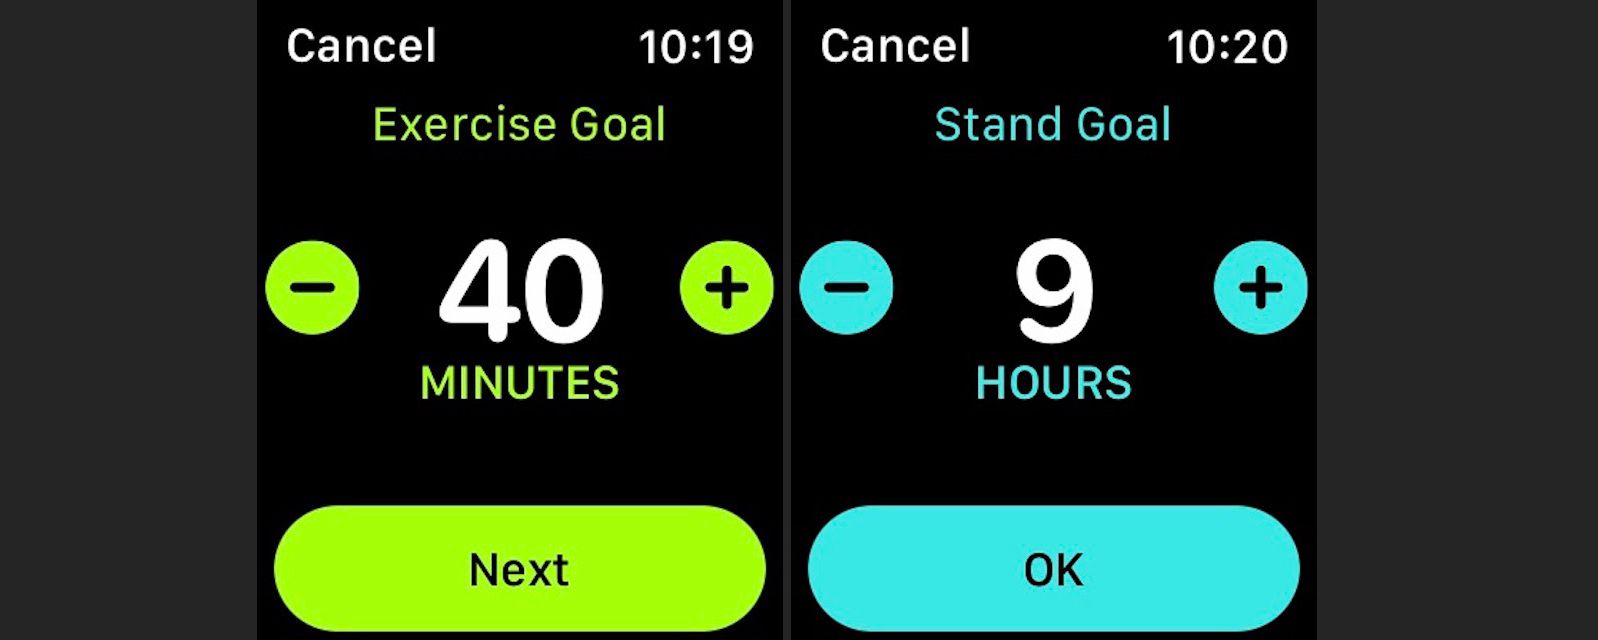 Změňte své cíle v oblasti cvičení a stojů na Apple Watch pomocí aplikace Activity